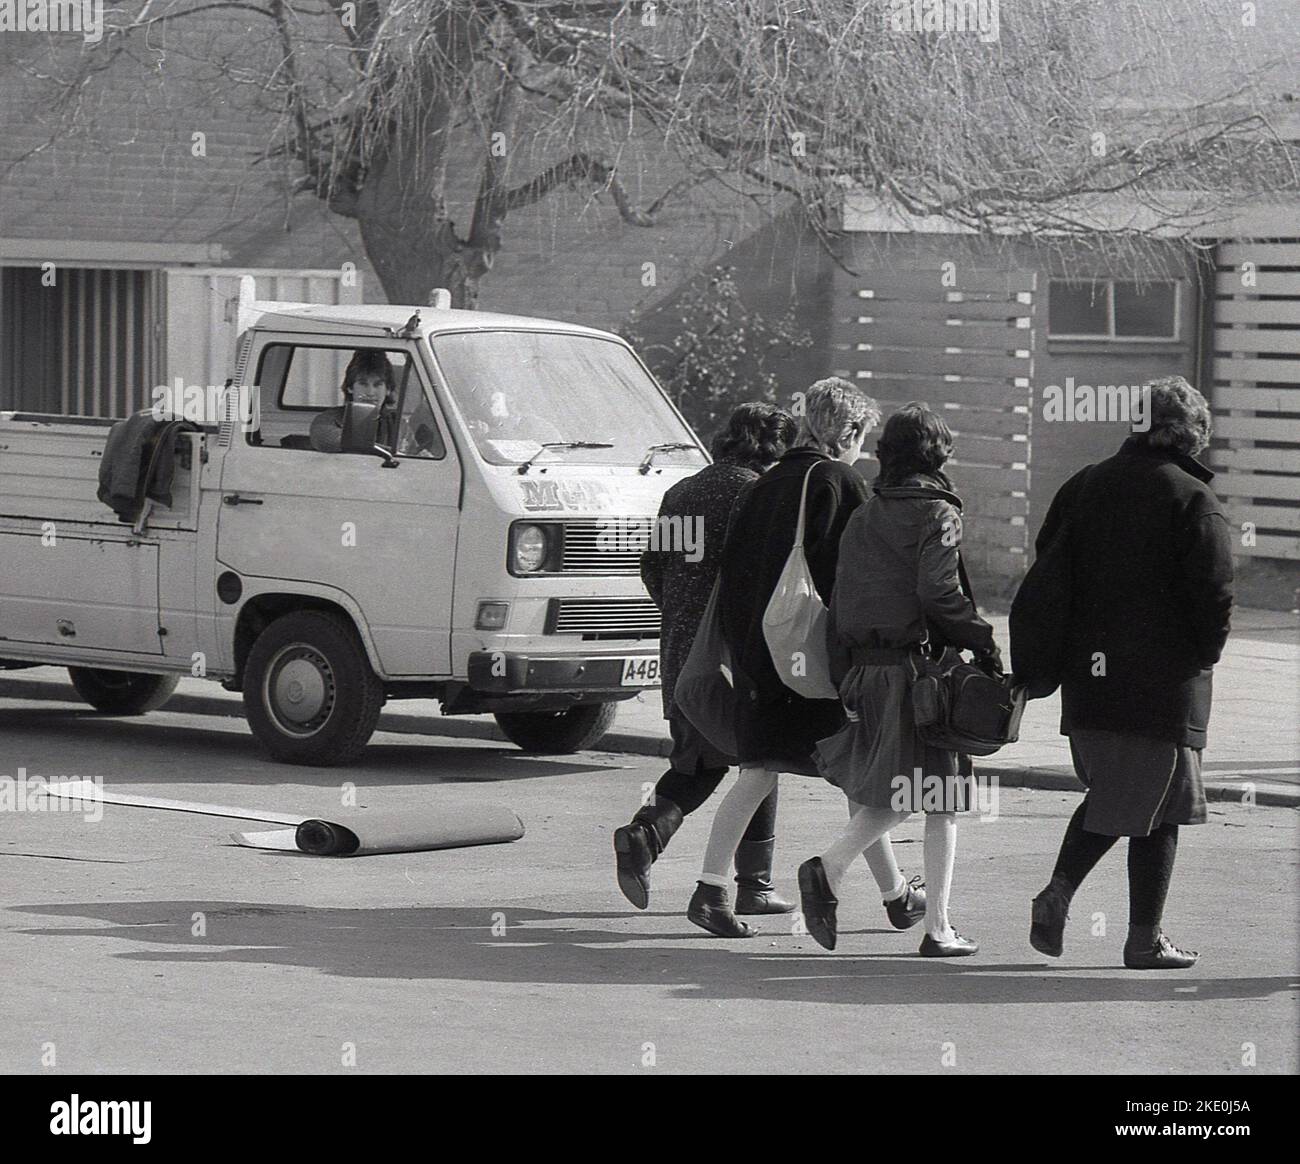 1987, storico, sciopero insegnanti, insegnanti di sesso femminile che lasciano la scuola, Inghilterra, Regno Unito, senza classi extra, dopo le attività scolastiche. Foto Stock